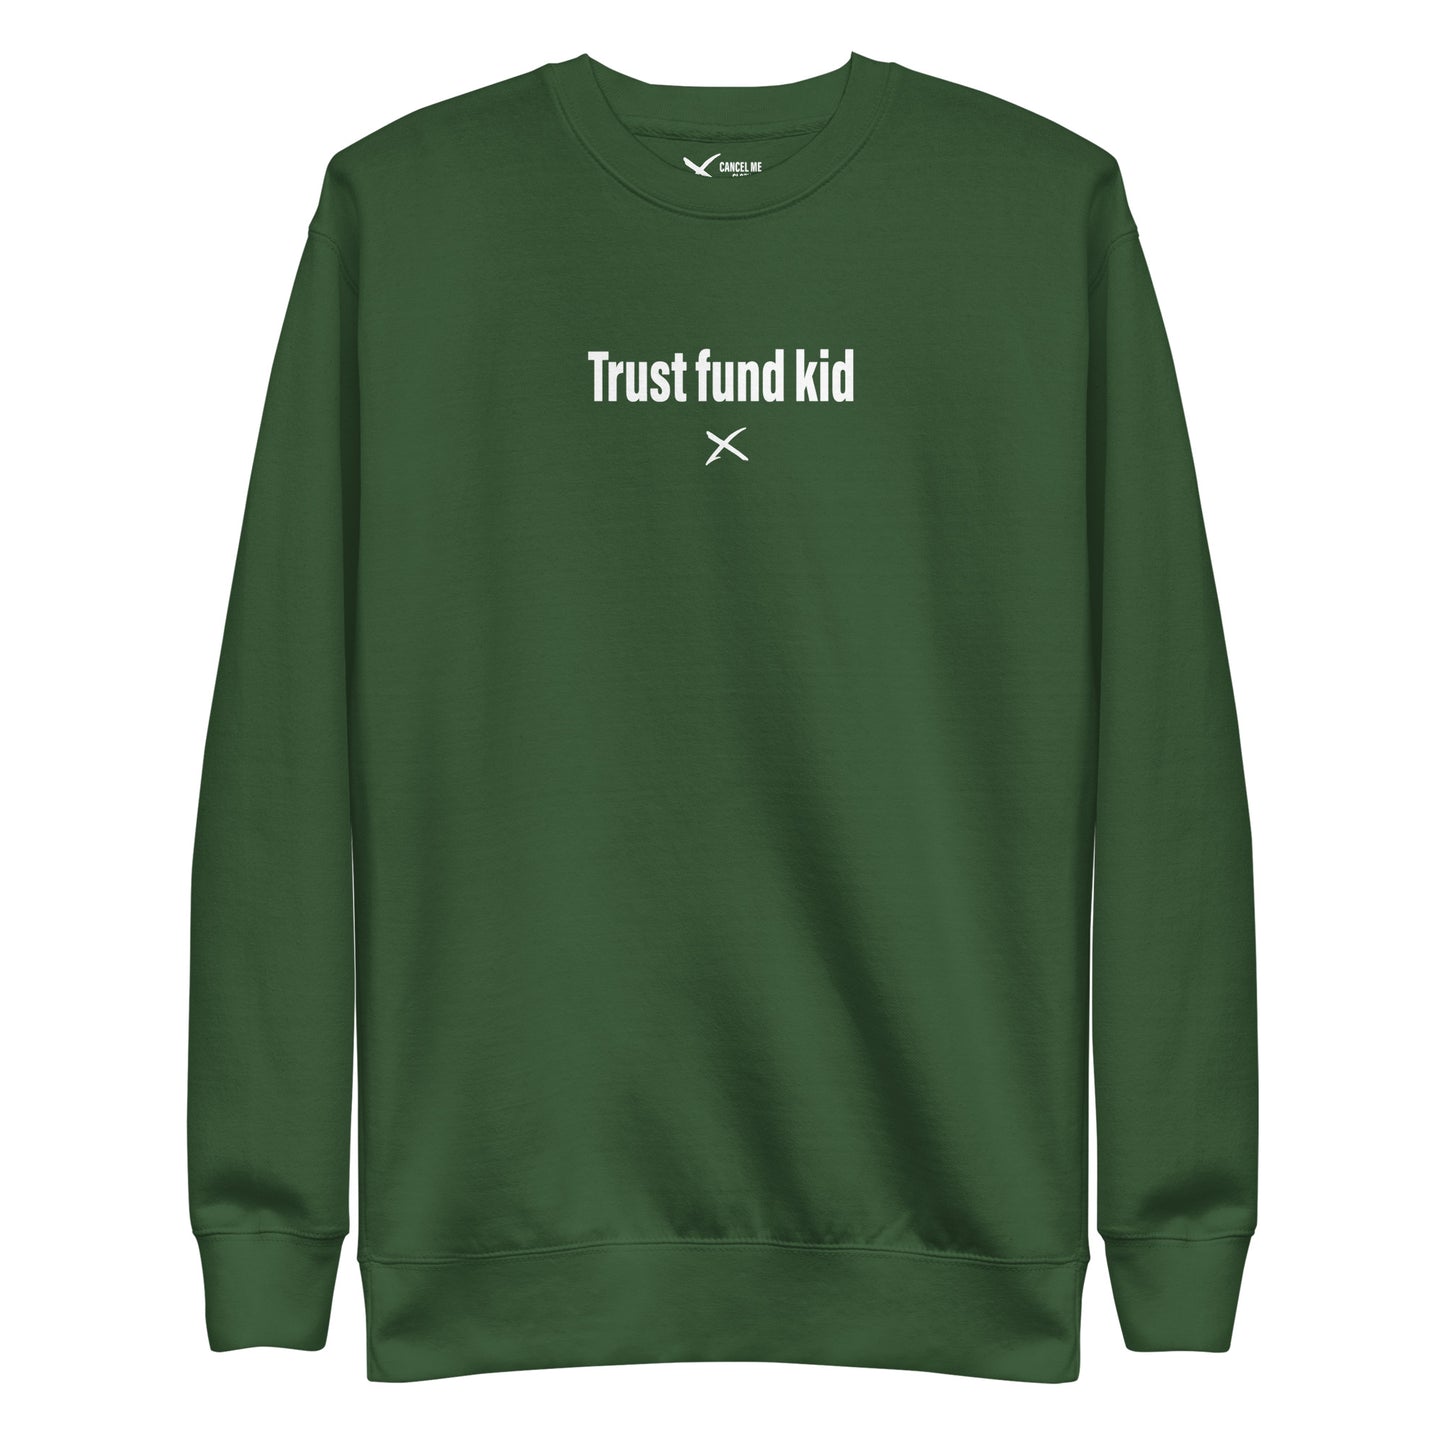 Trust fund kid - Sweatshirt